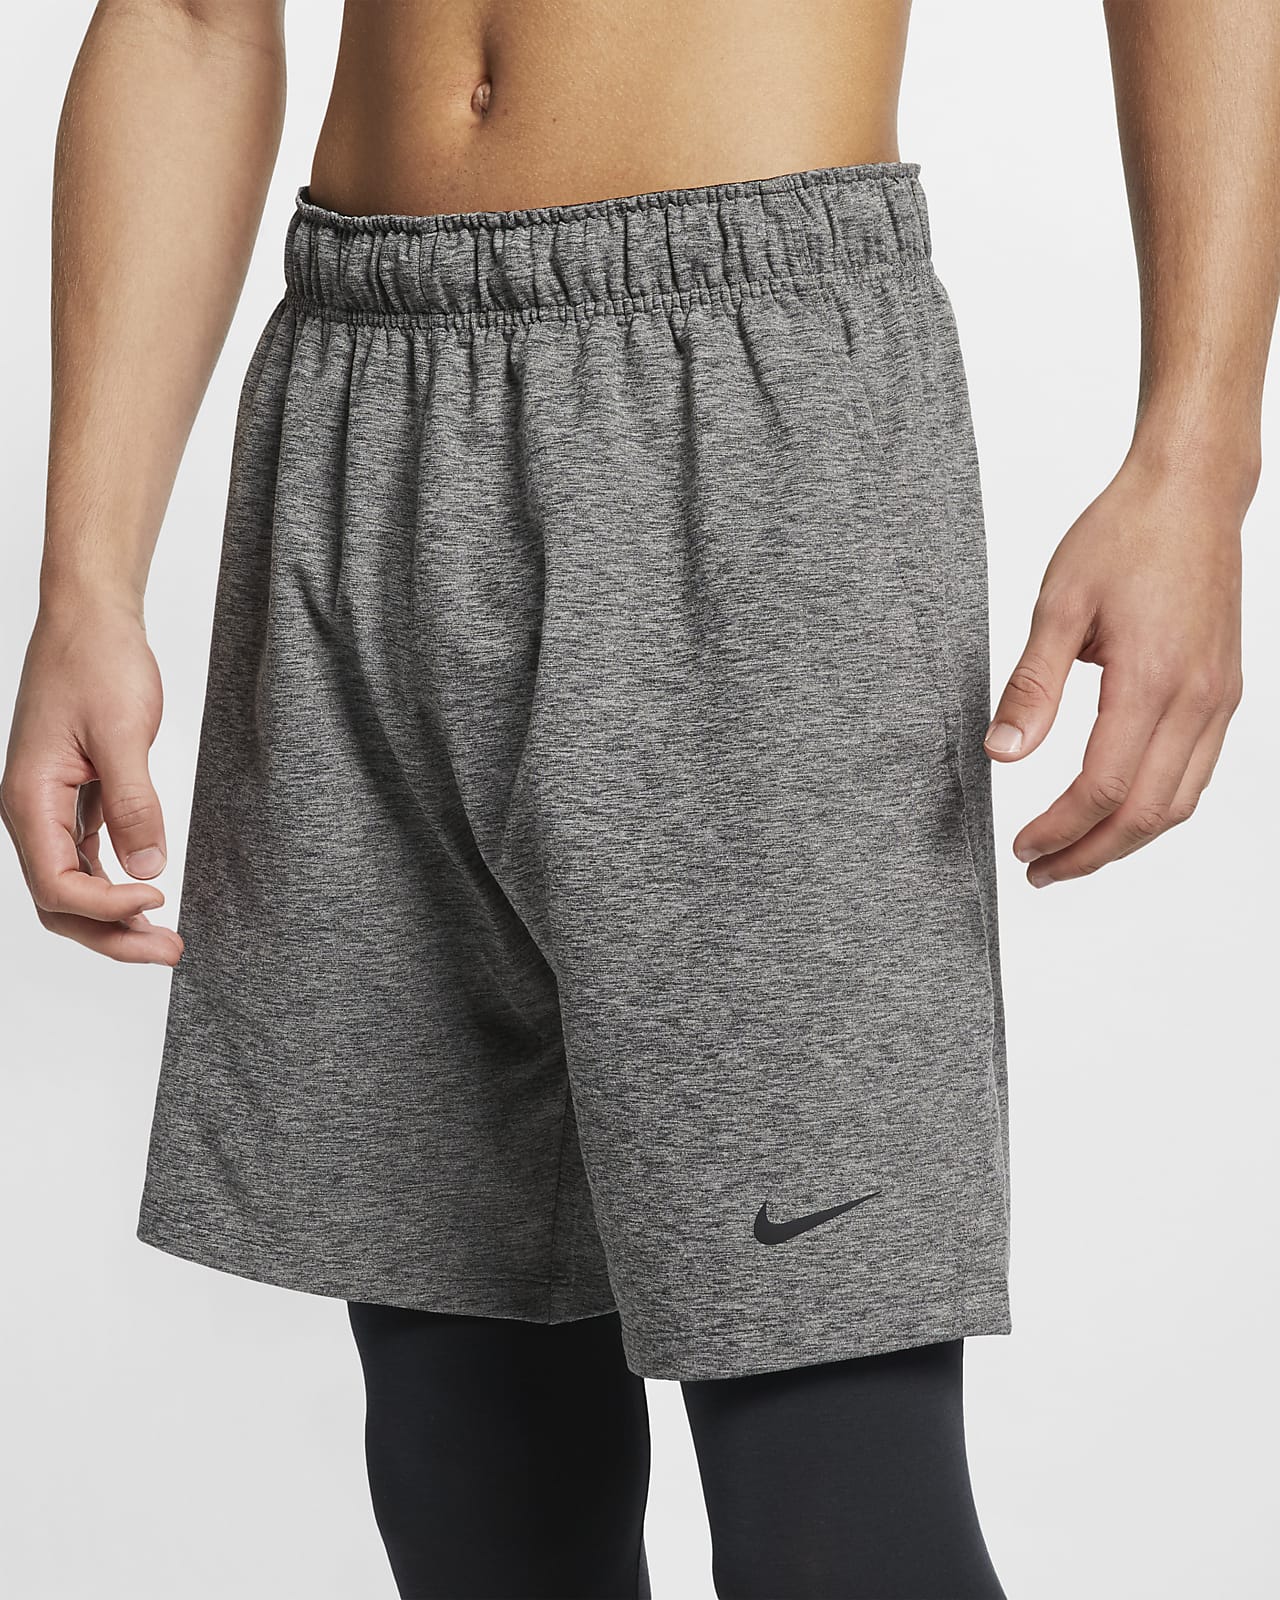 Nike Men's Yoga Training Shorts. Nike.com